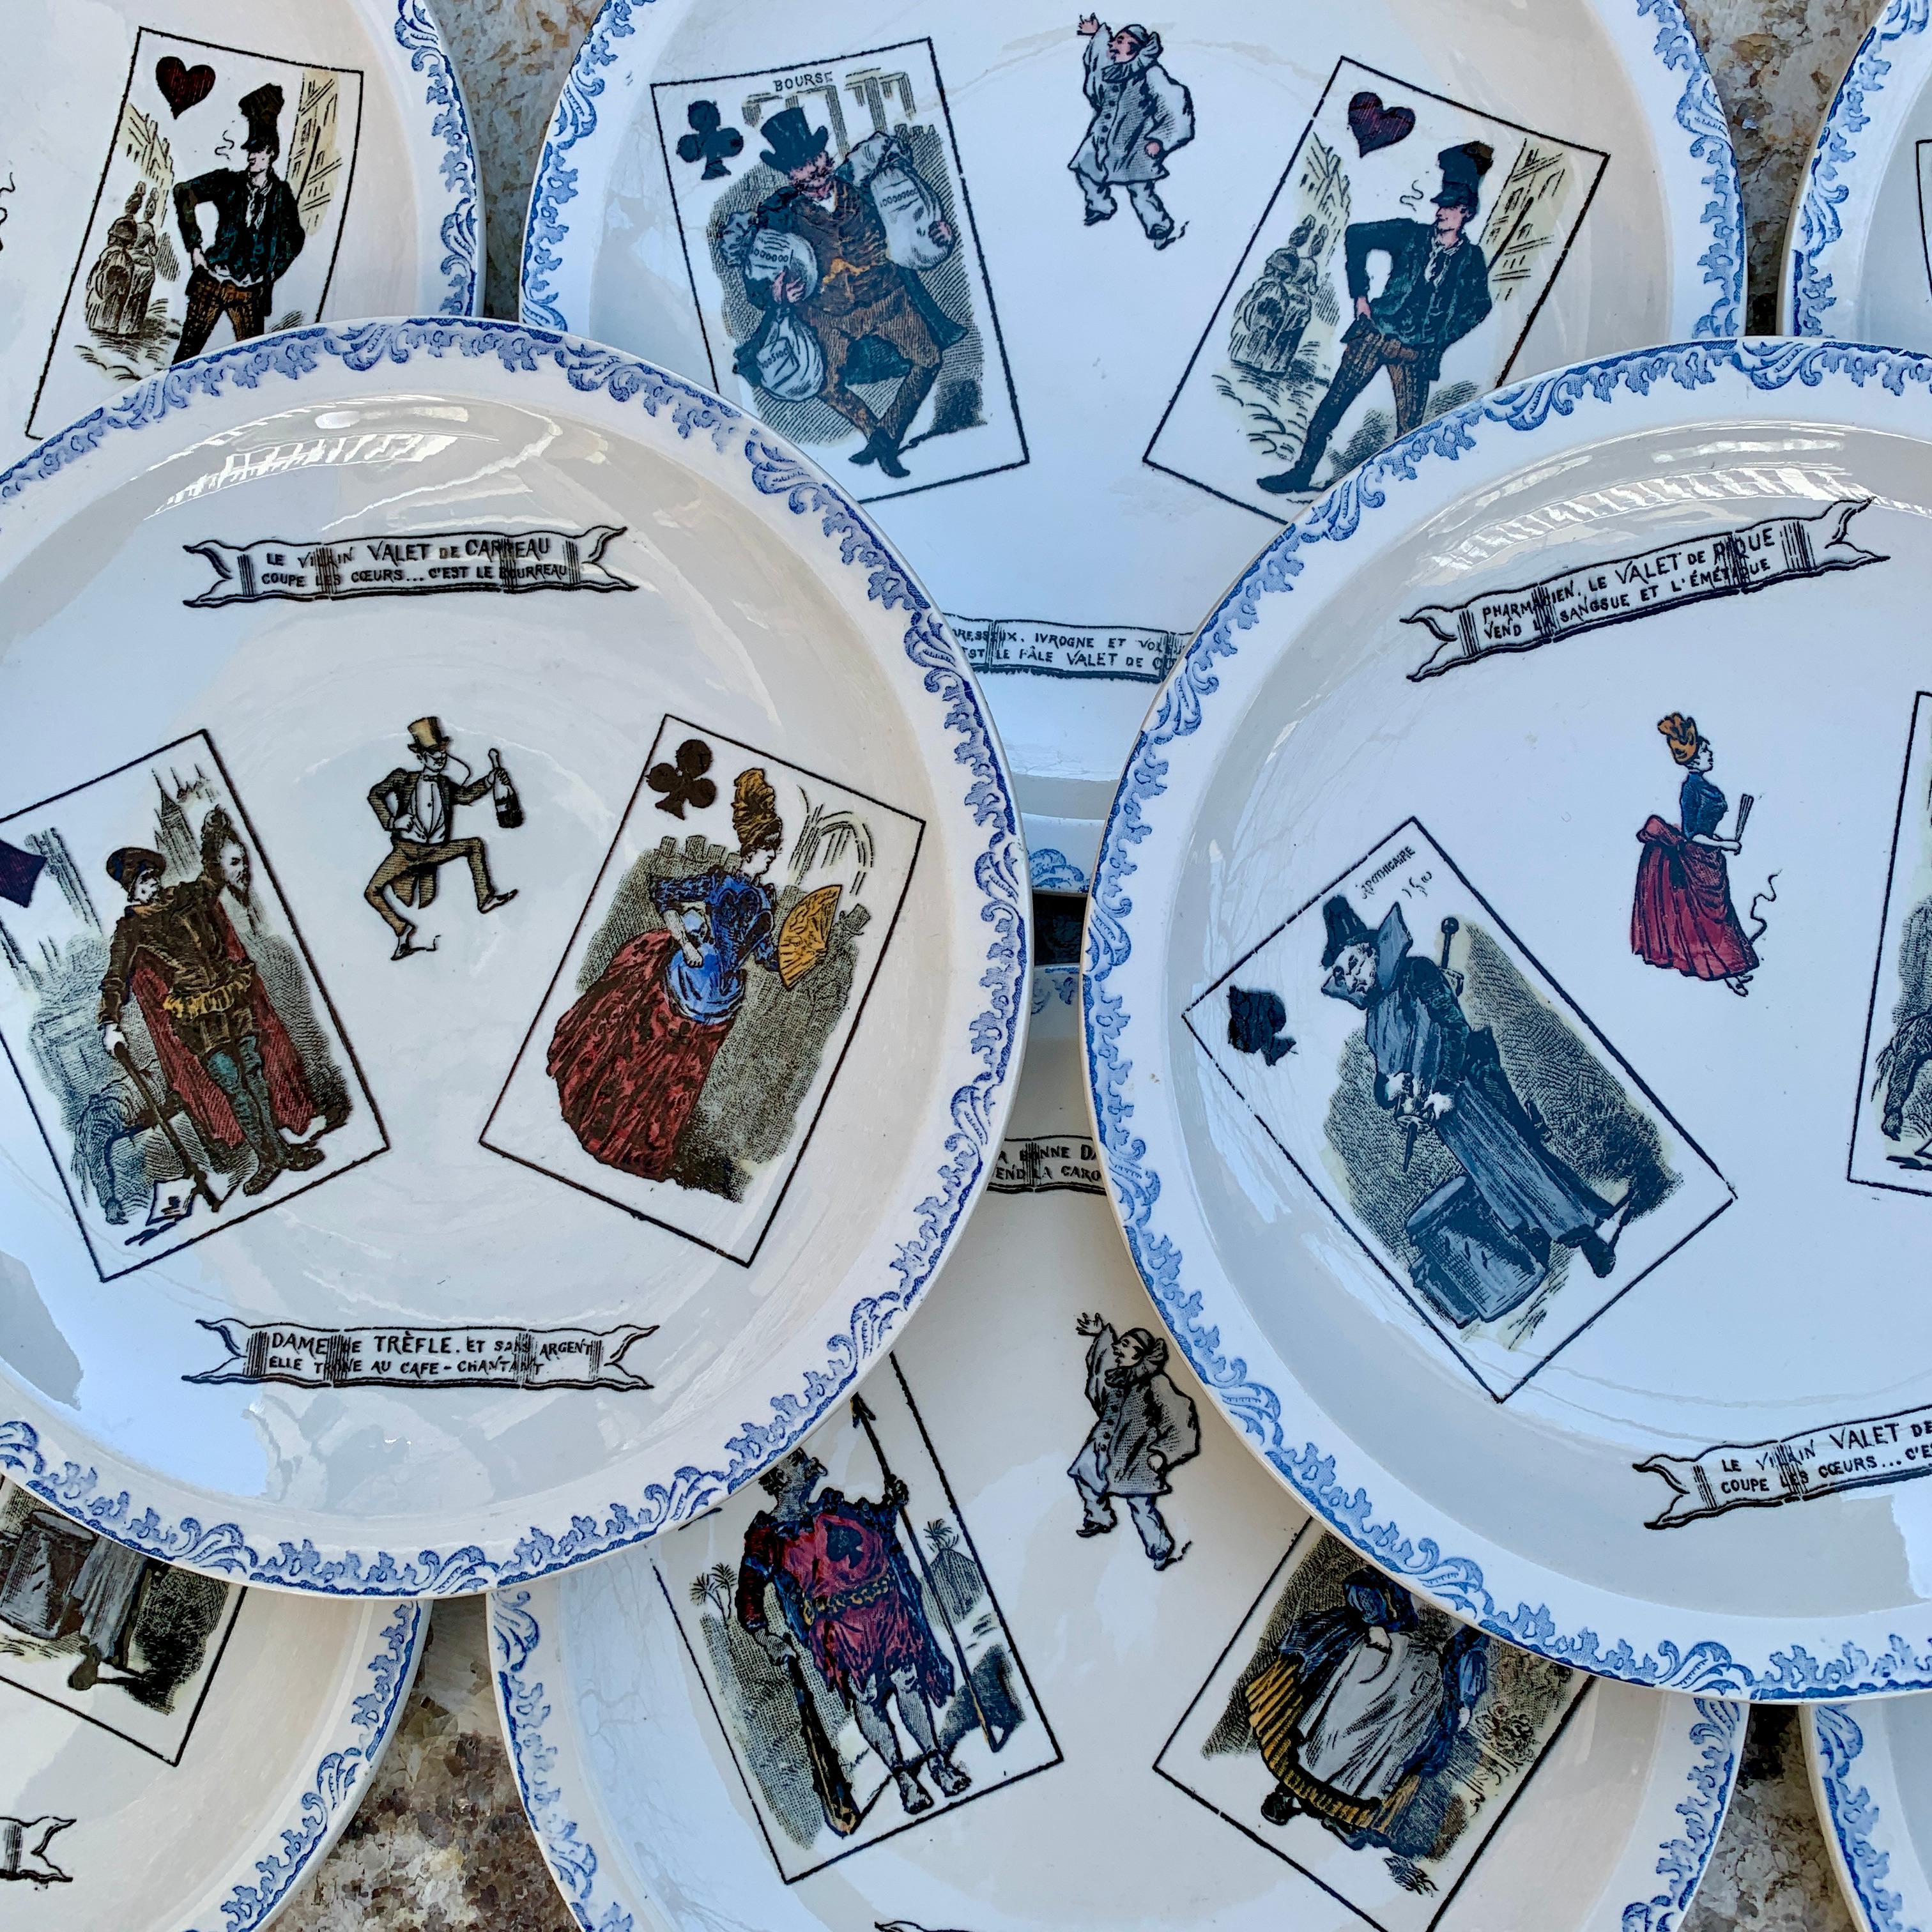 Un charmant ensemble de huit plaques en faïence HBCM, Hippolyte Boulenger Creil Montereau pour cartes à jouer - France, vers les années 1920.

Connu sous le nom d'assiettes parlantes, cet ensemble est basé sur les cartes de face d'un jeu de